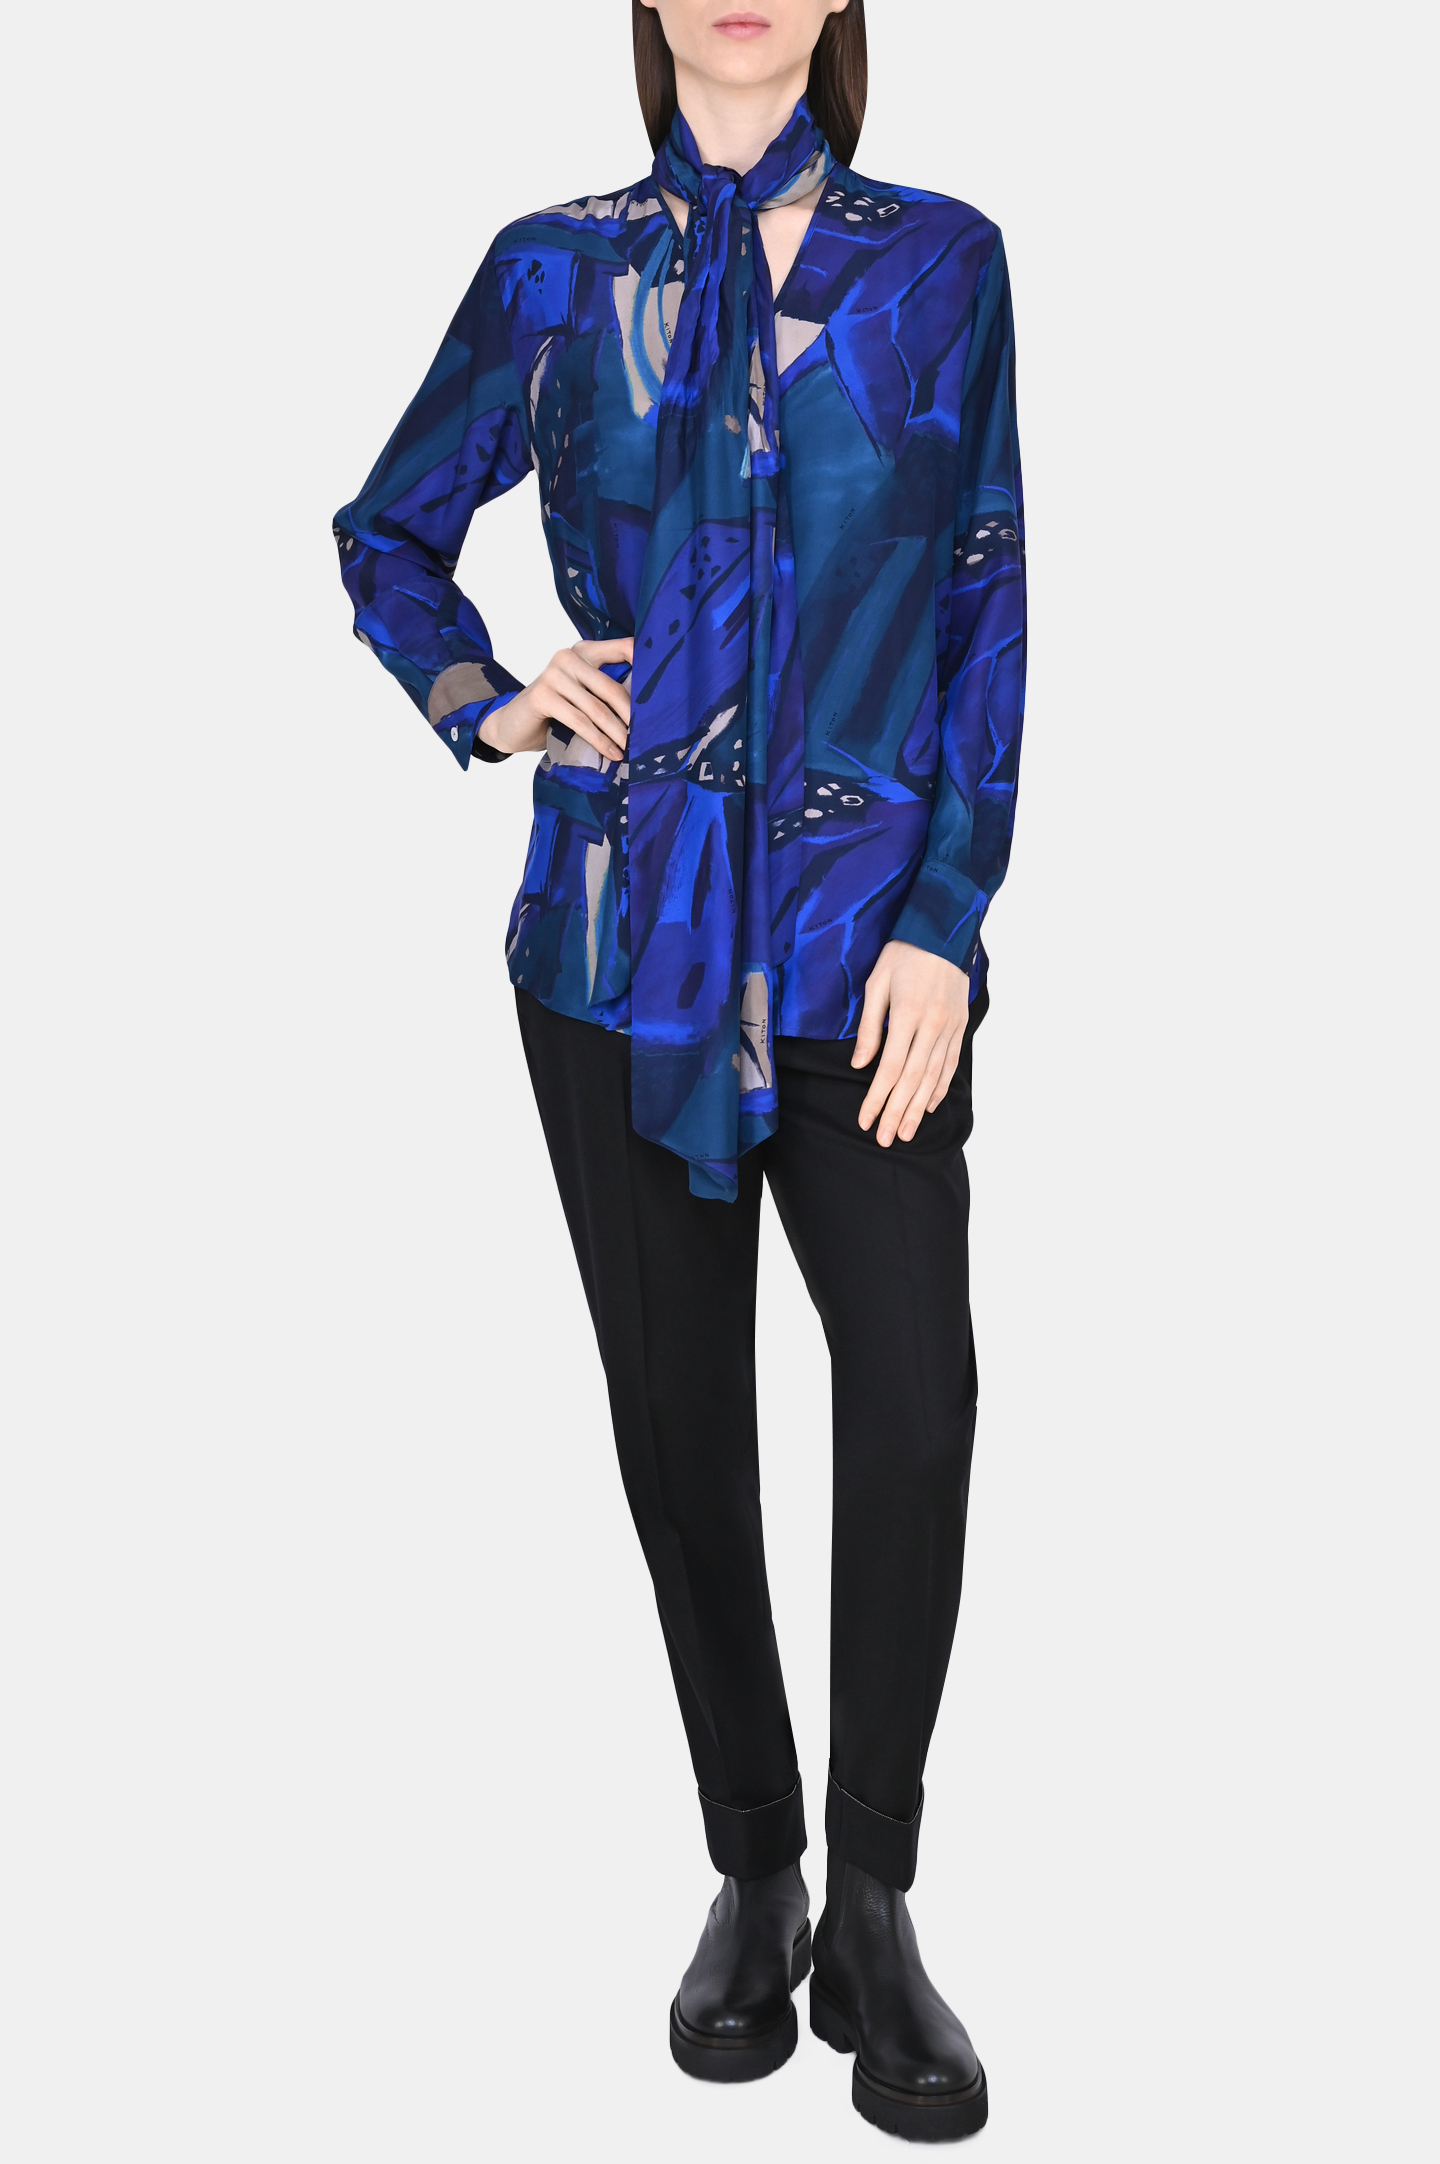 Блуза KITON D50401K0553, цвет: Синий, Женский